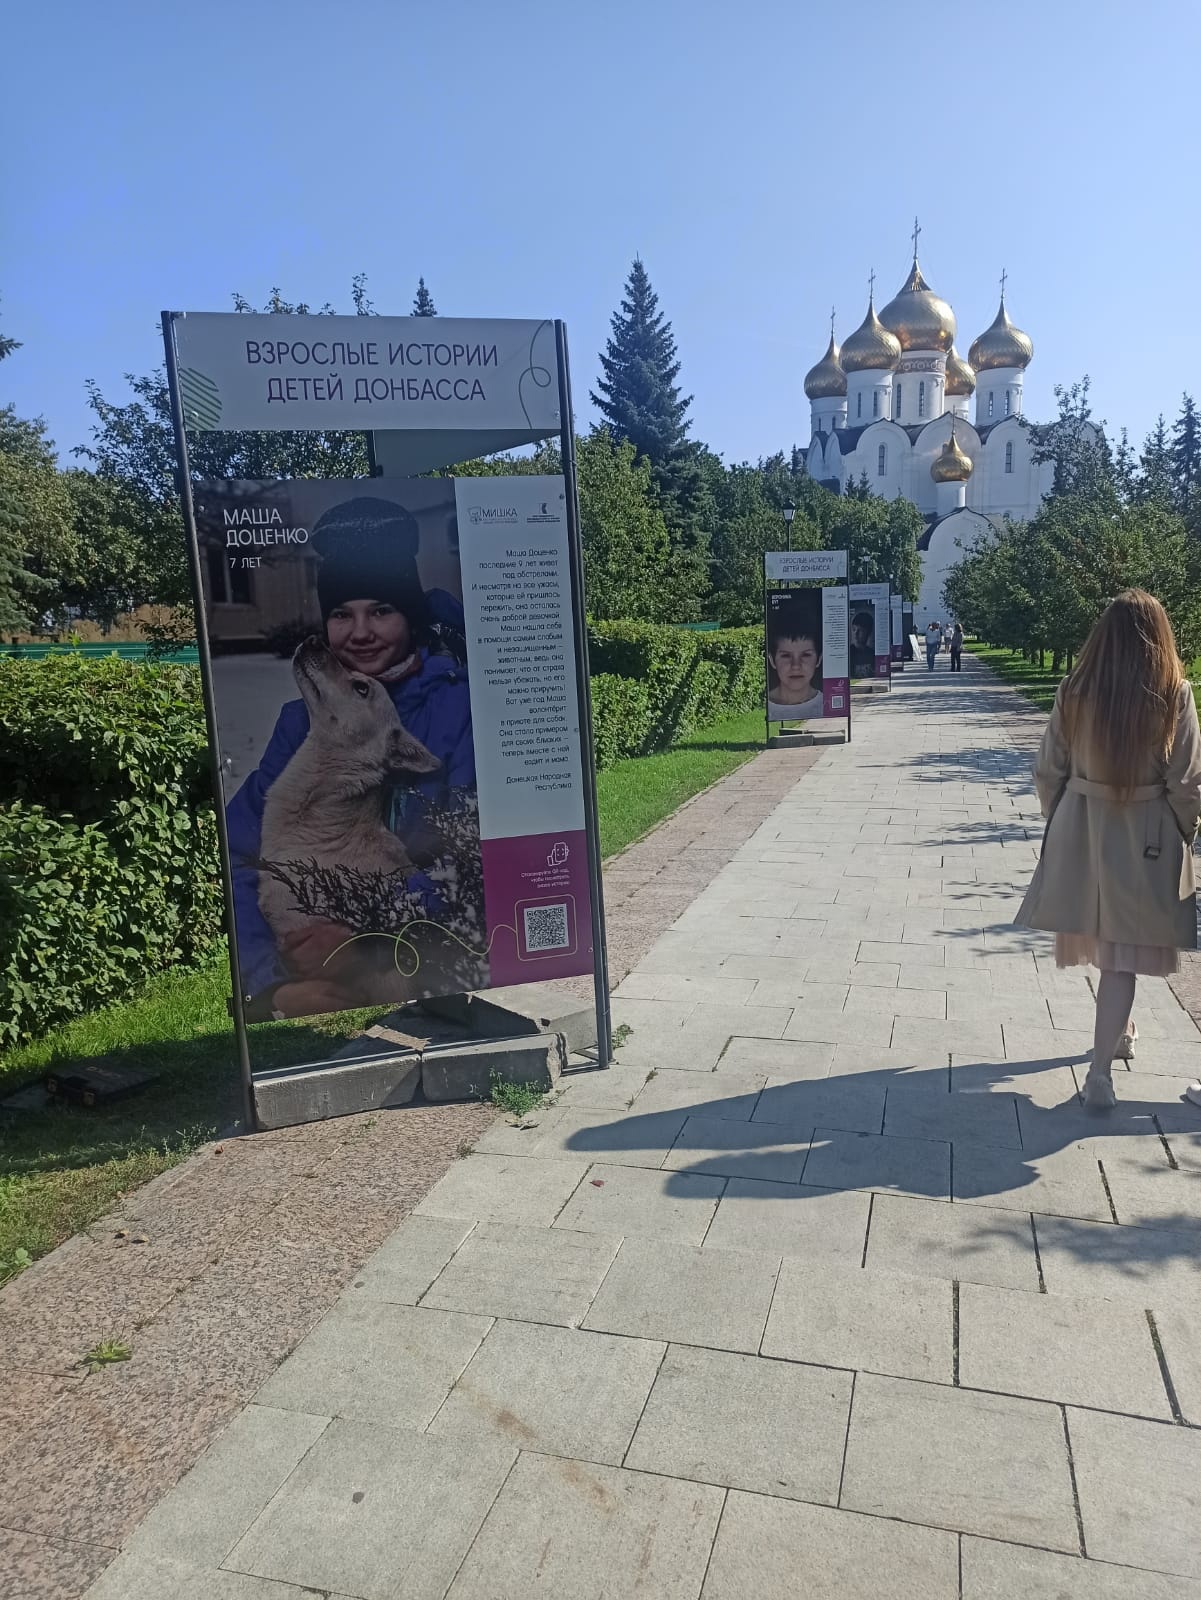 В Ярославле открылась фотовыставка «Взрослые истории детей Донбасса»